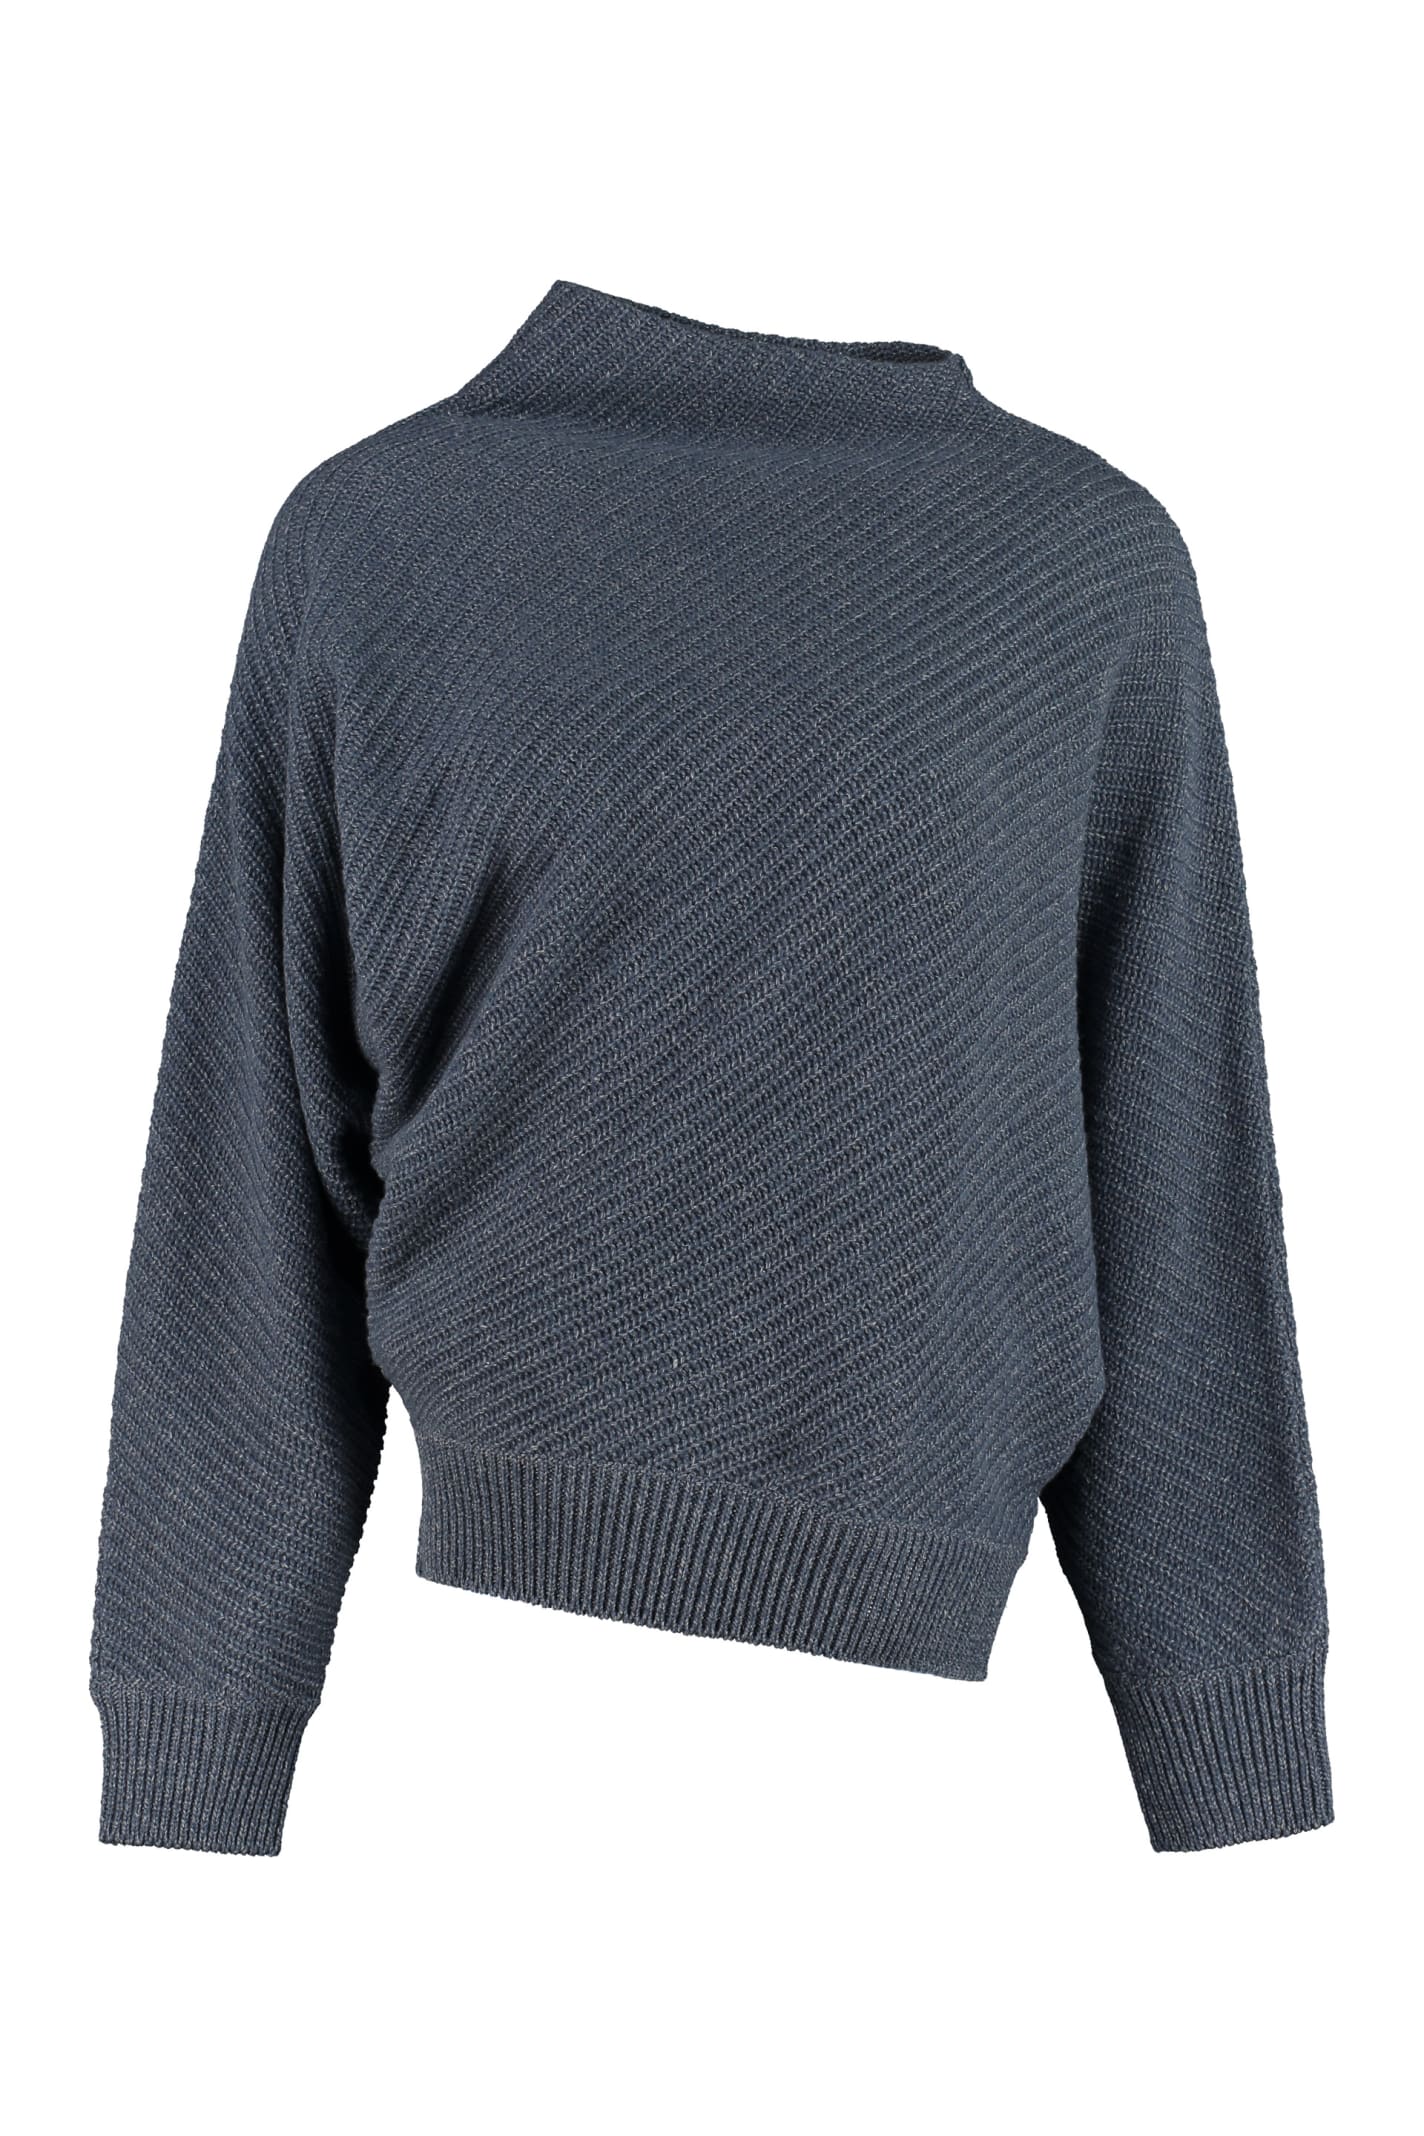 Agnona Cashmere-linen Blend Sweater